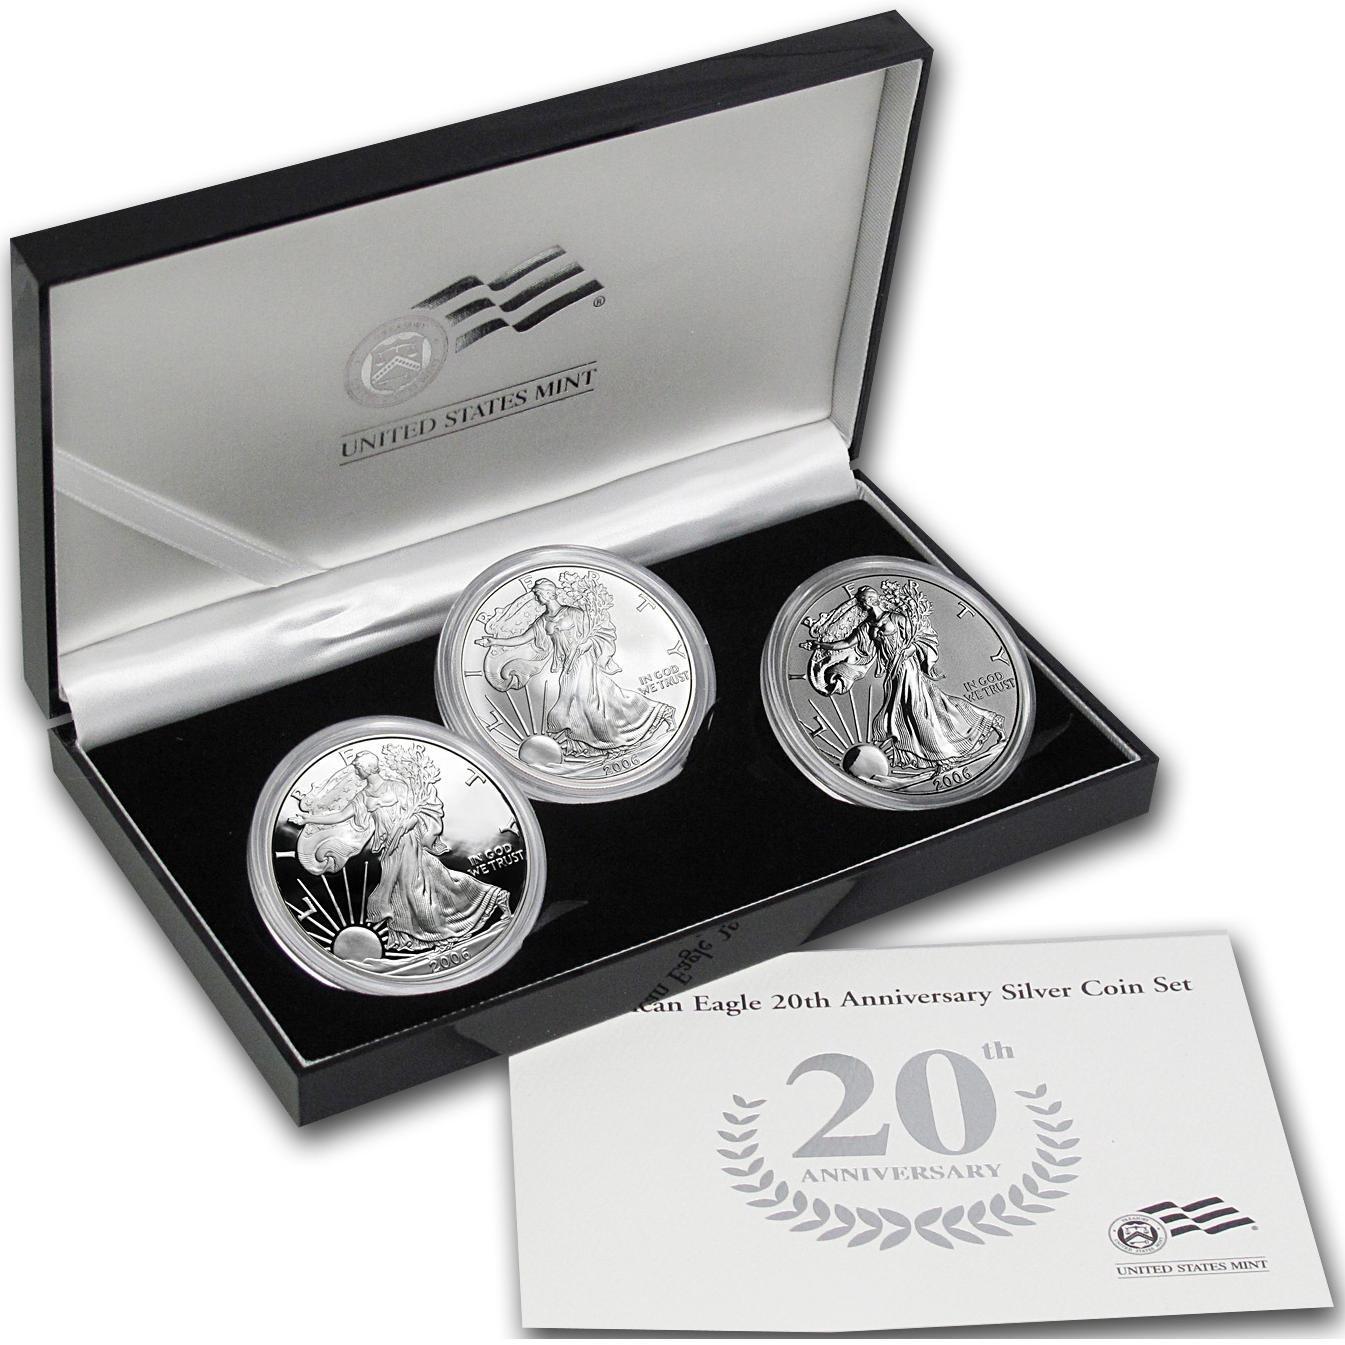 2006 3-piece U.S. American Eagle 20th Anniversary Silver Coin Set